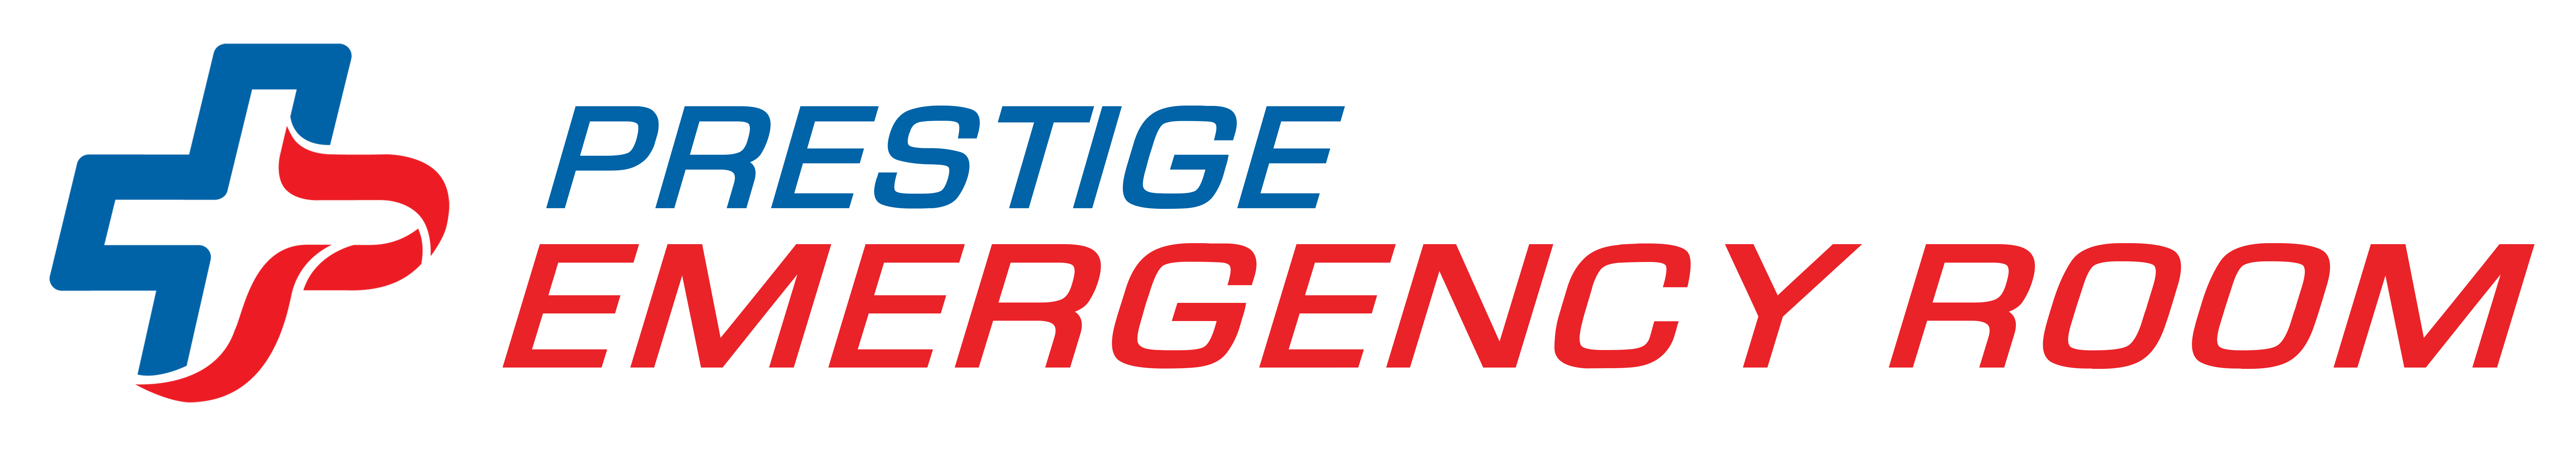 Prestige Emergency Room - 1604 / Potranco Logo